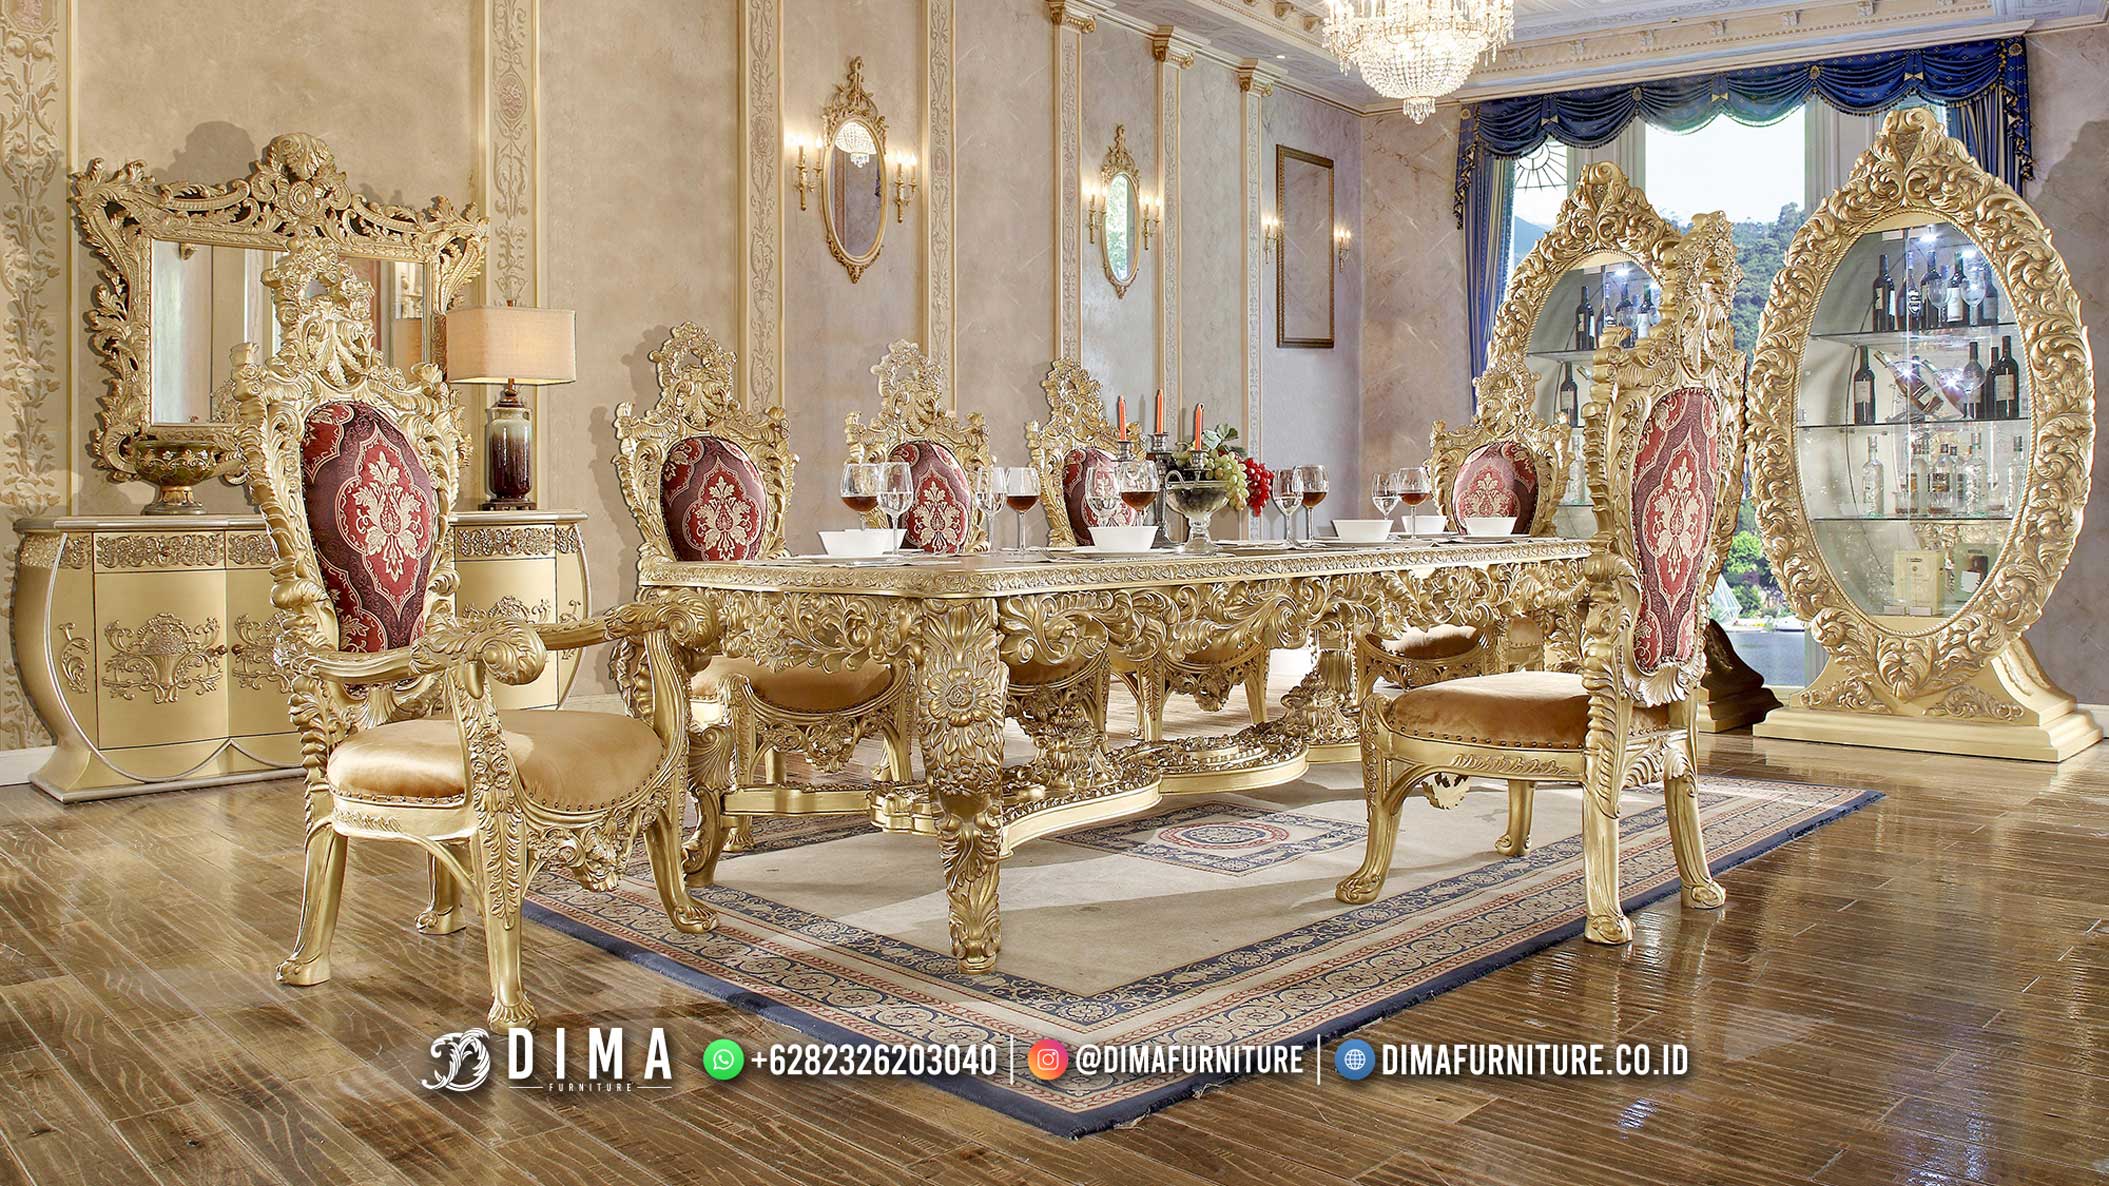 100% Recomanded Meja Makan Mewah Beauty Furniture Jepara BT-1652